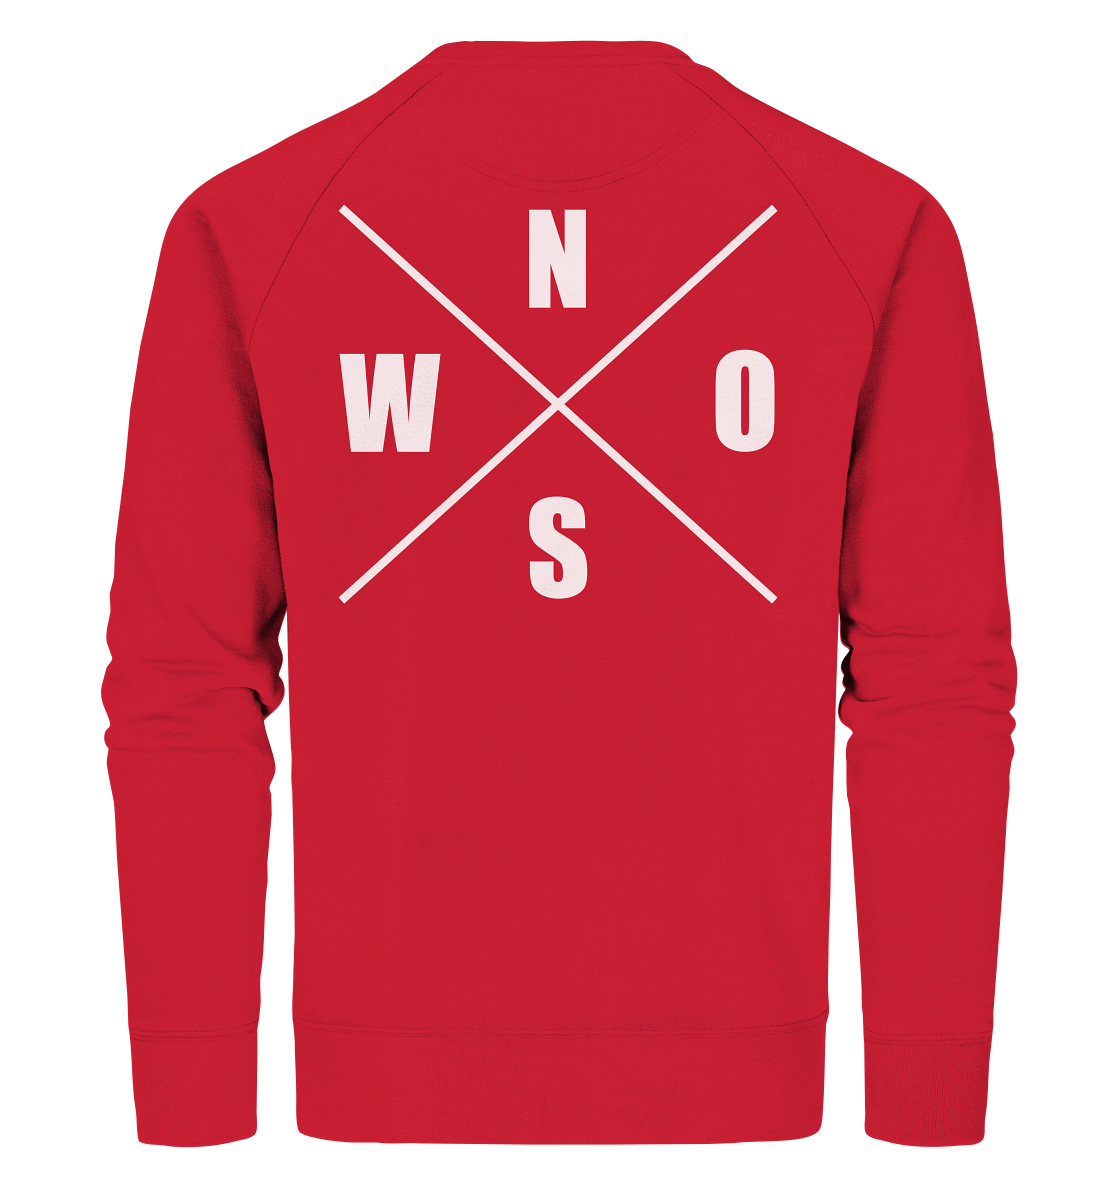 N.O.S.W. BLOCK Sweater "N.O.S.W. ICON" @ Front & Back Männer Organic Sweatshirt rot